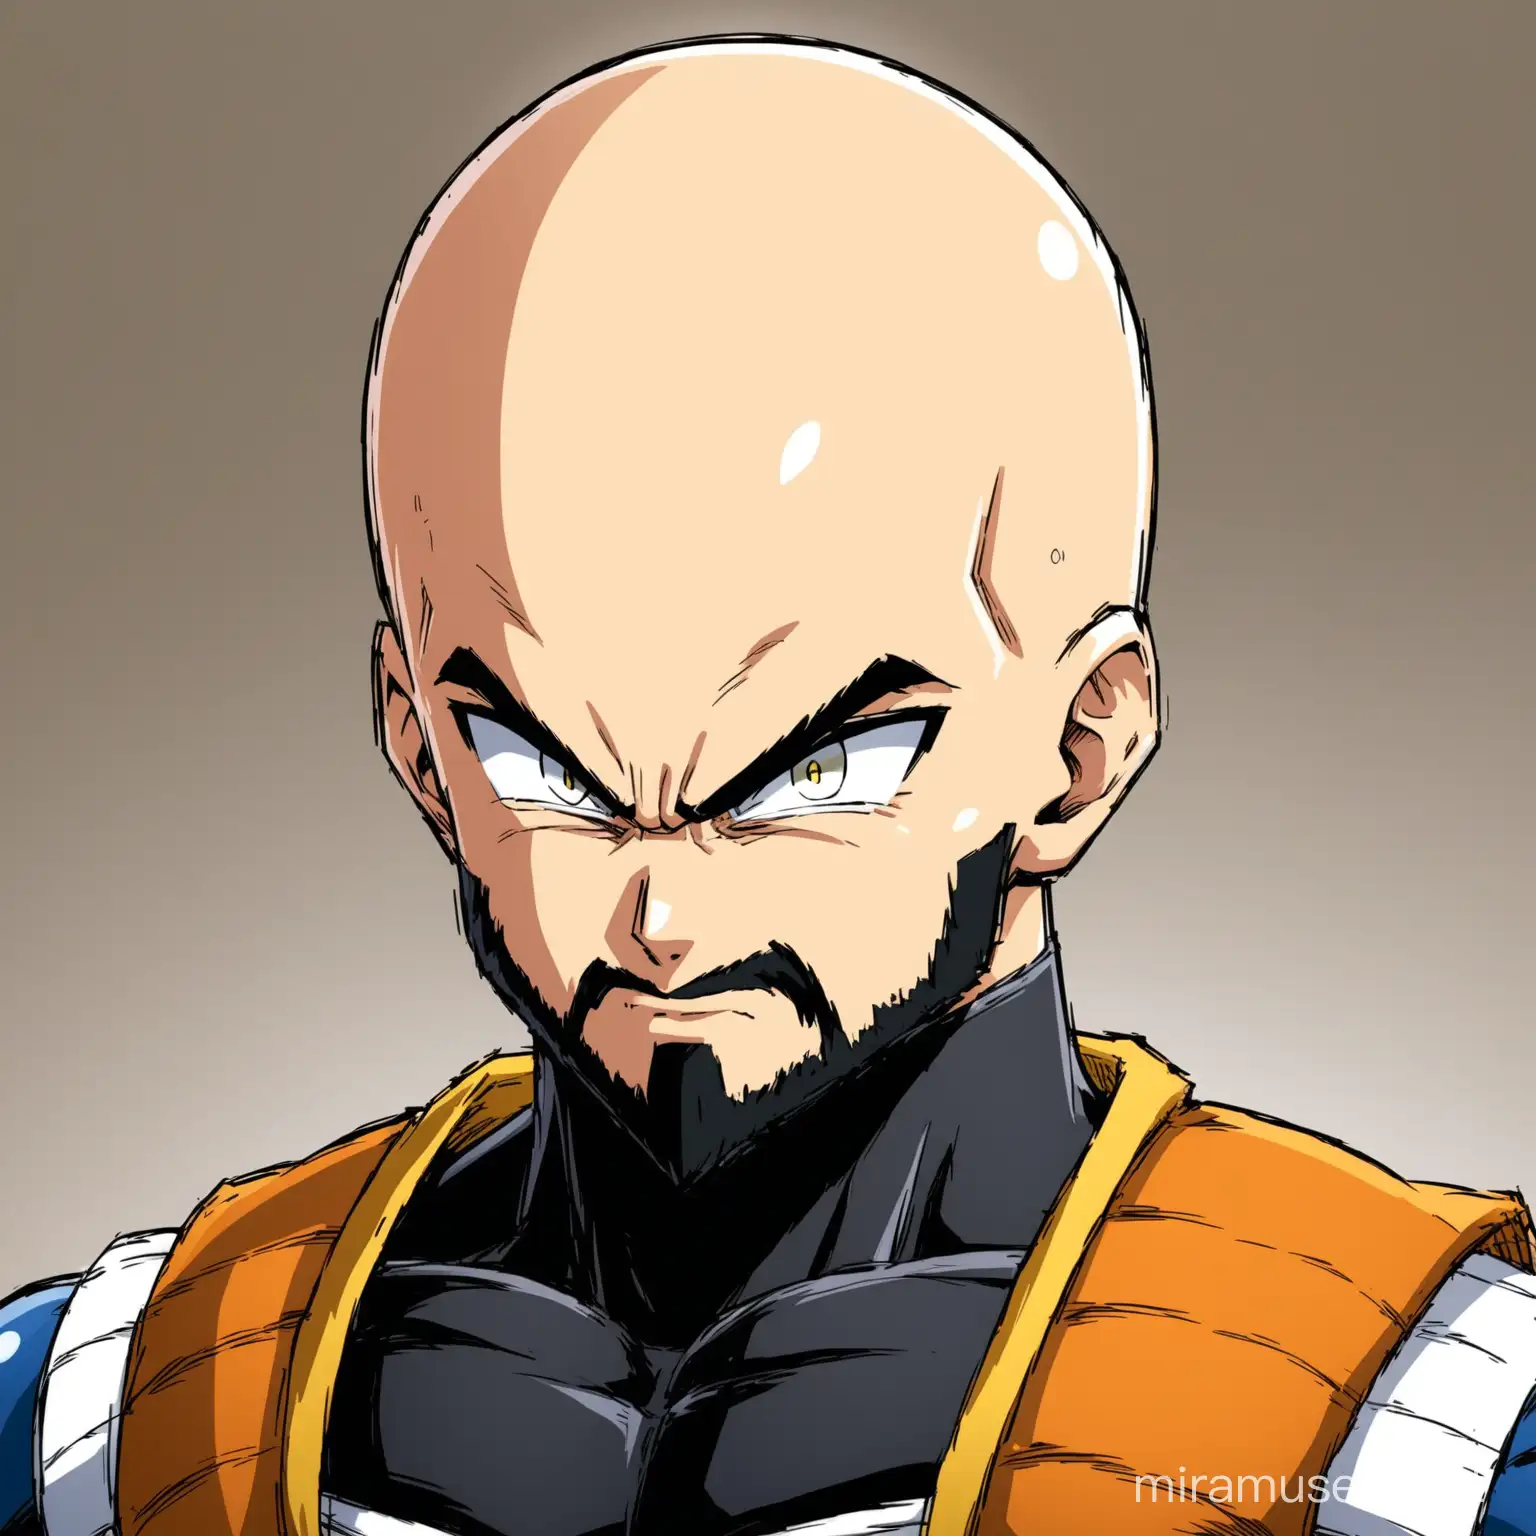 Powerful Bald Super Saiyan Vegeta with Intense Black Beard